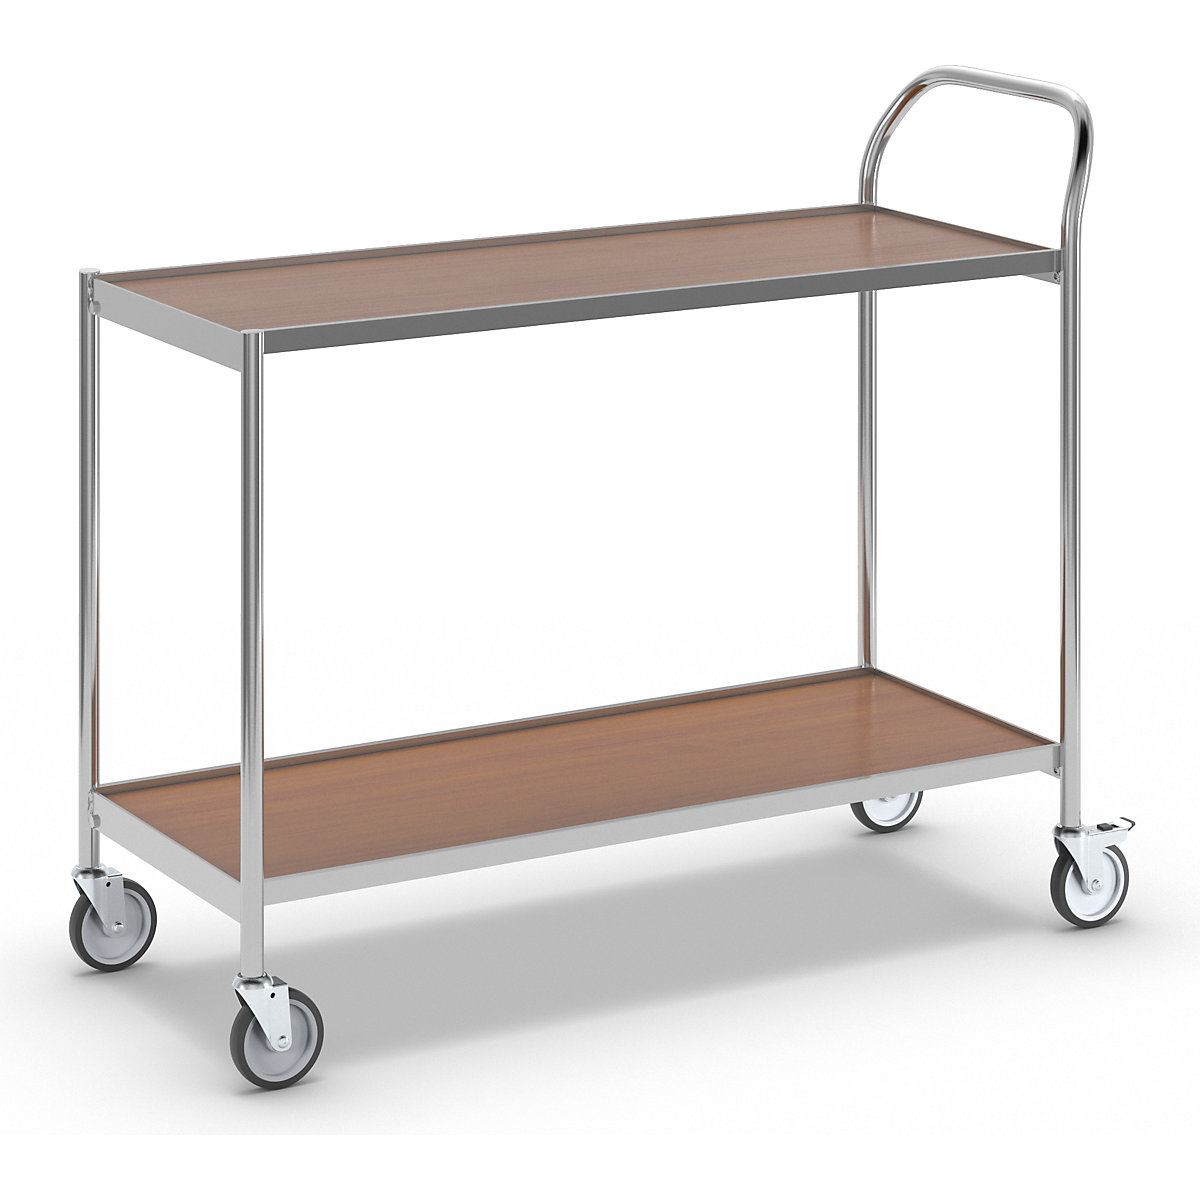 Wózek stołowy – HelgeNyberg, 2 piętra, dł. x szer. 1000 x 420 mm, chrom/buk-3